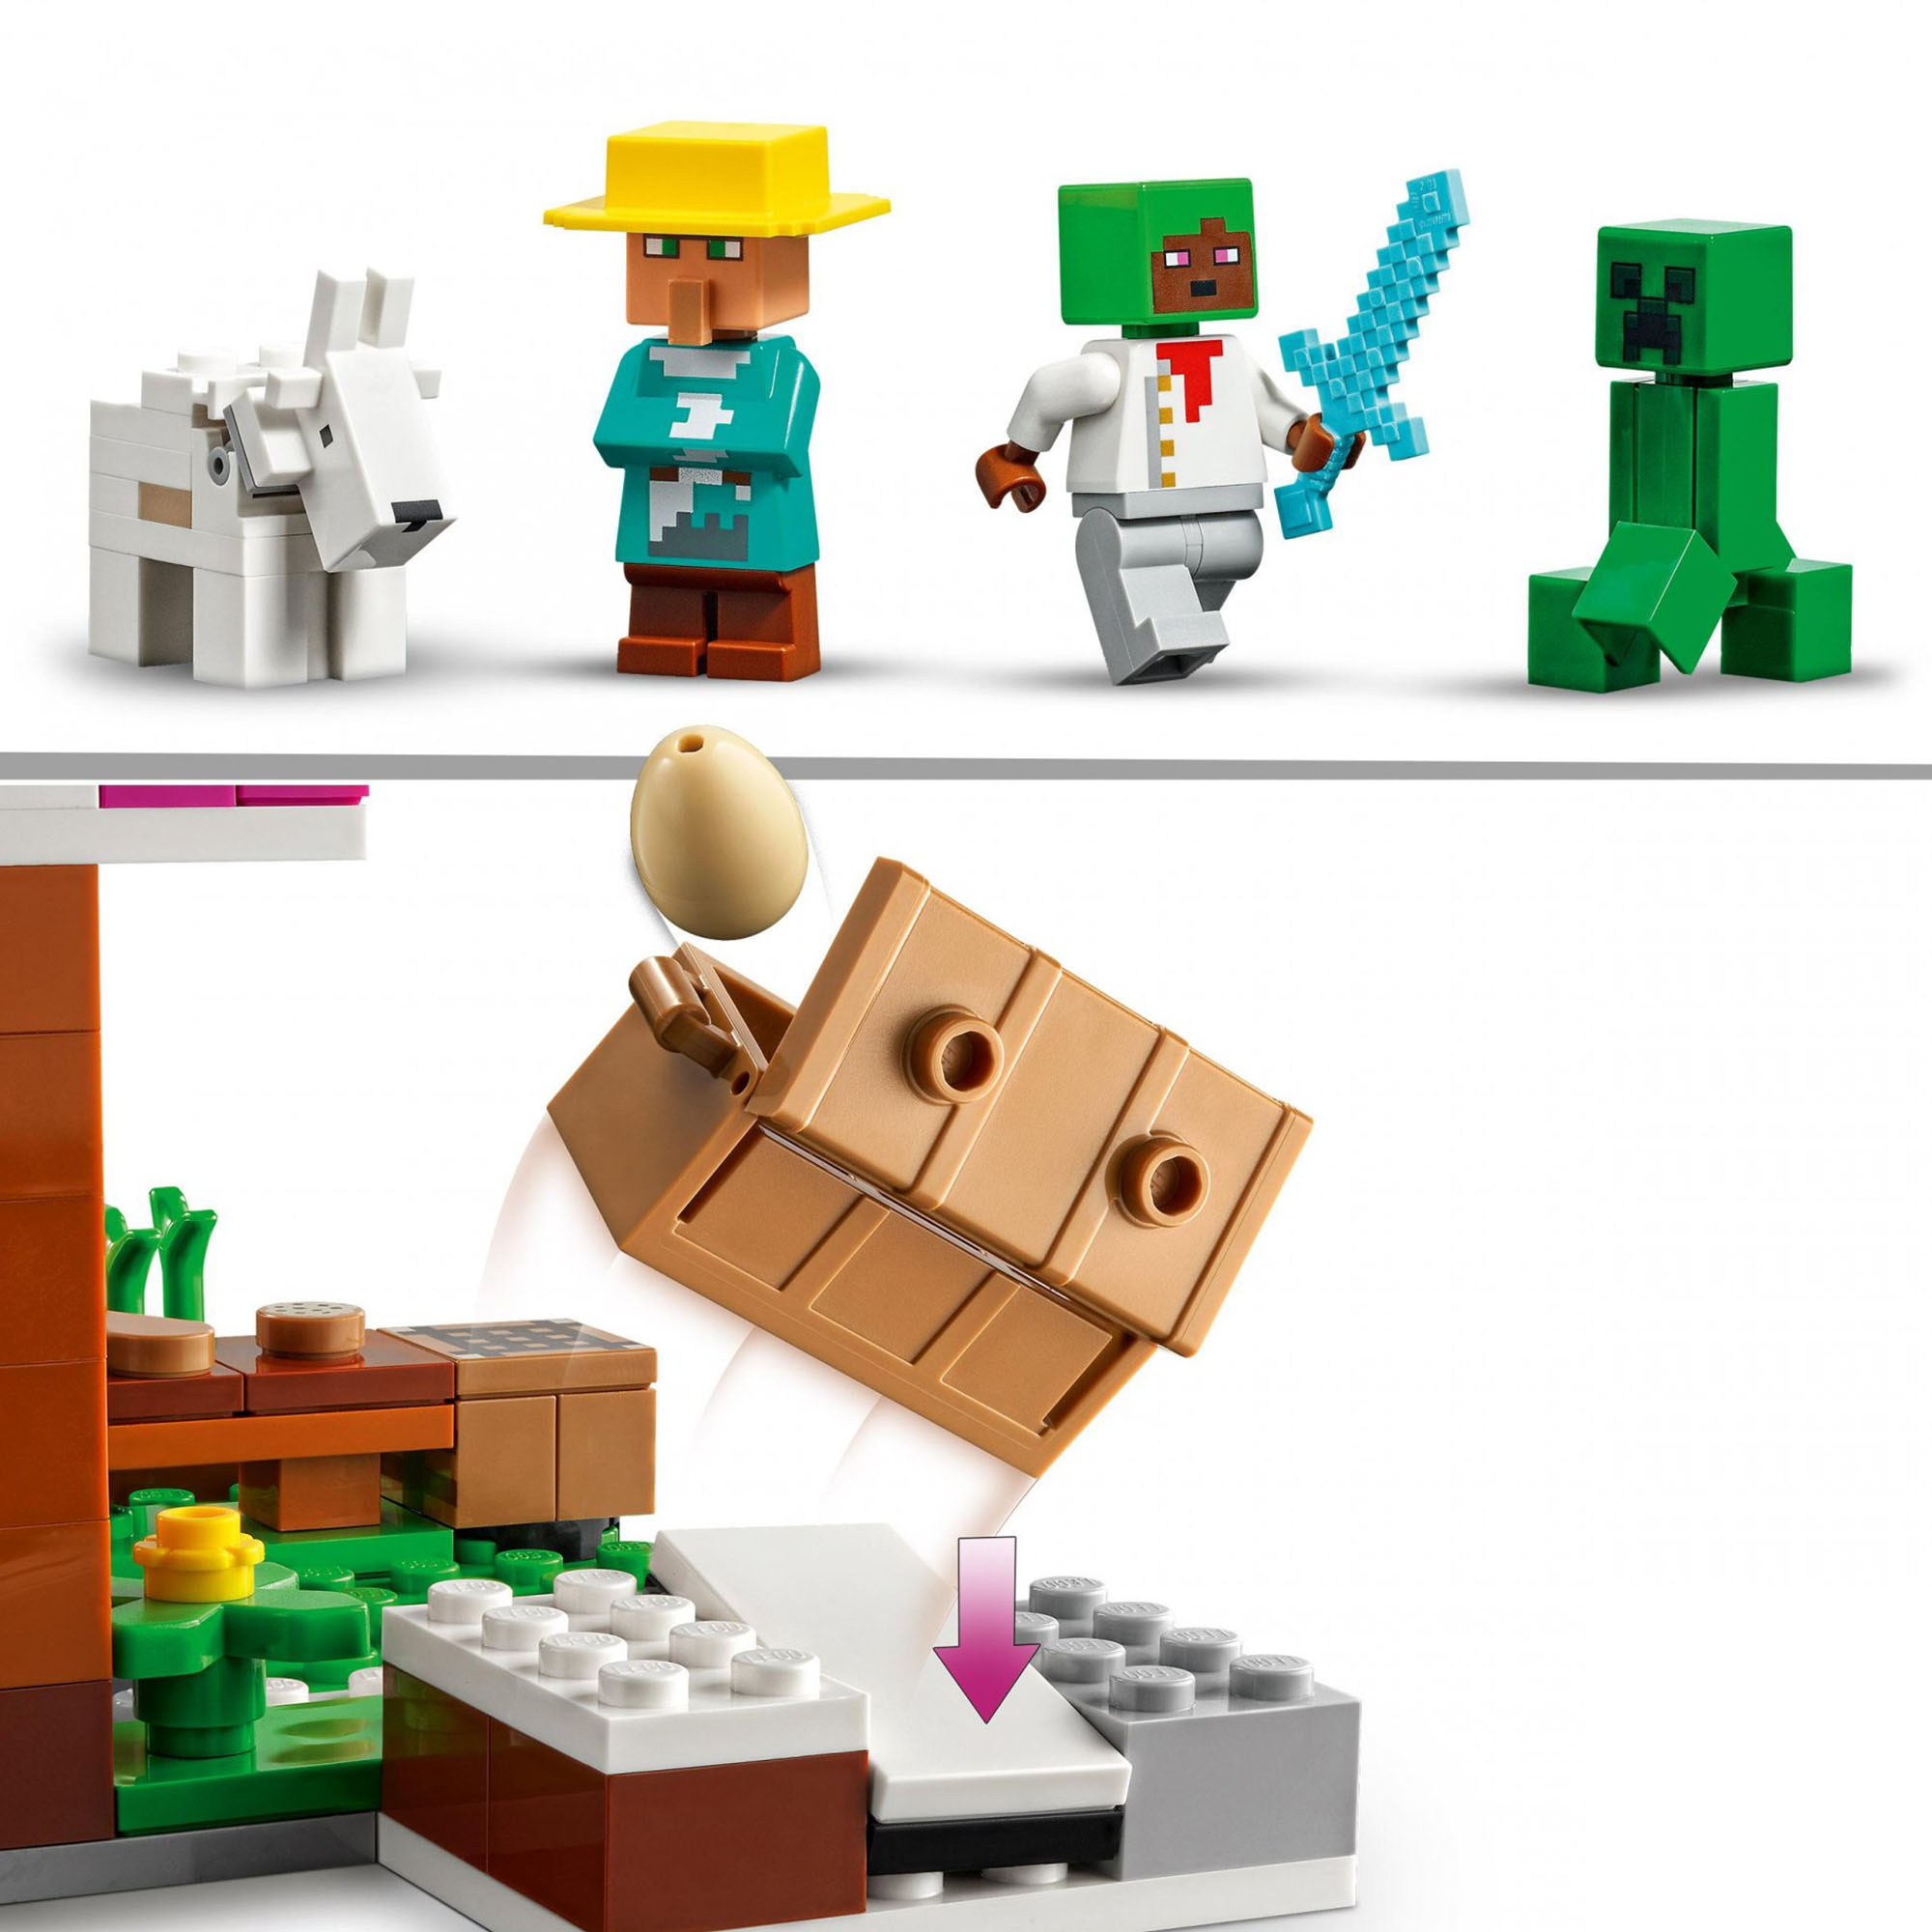 LEGO Minecraft La Panetteria, Villaggio di Neve, Casa Giocattolo con Creeper, Sp 21184, , large